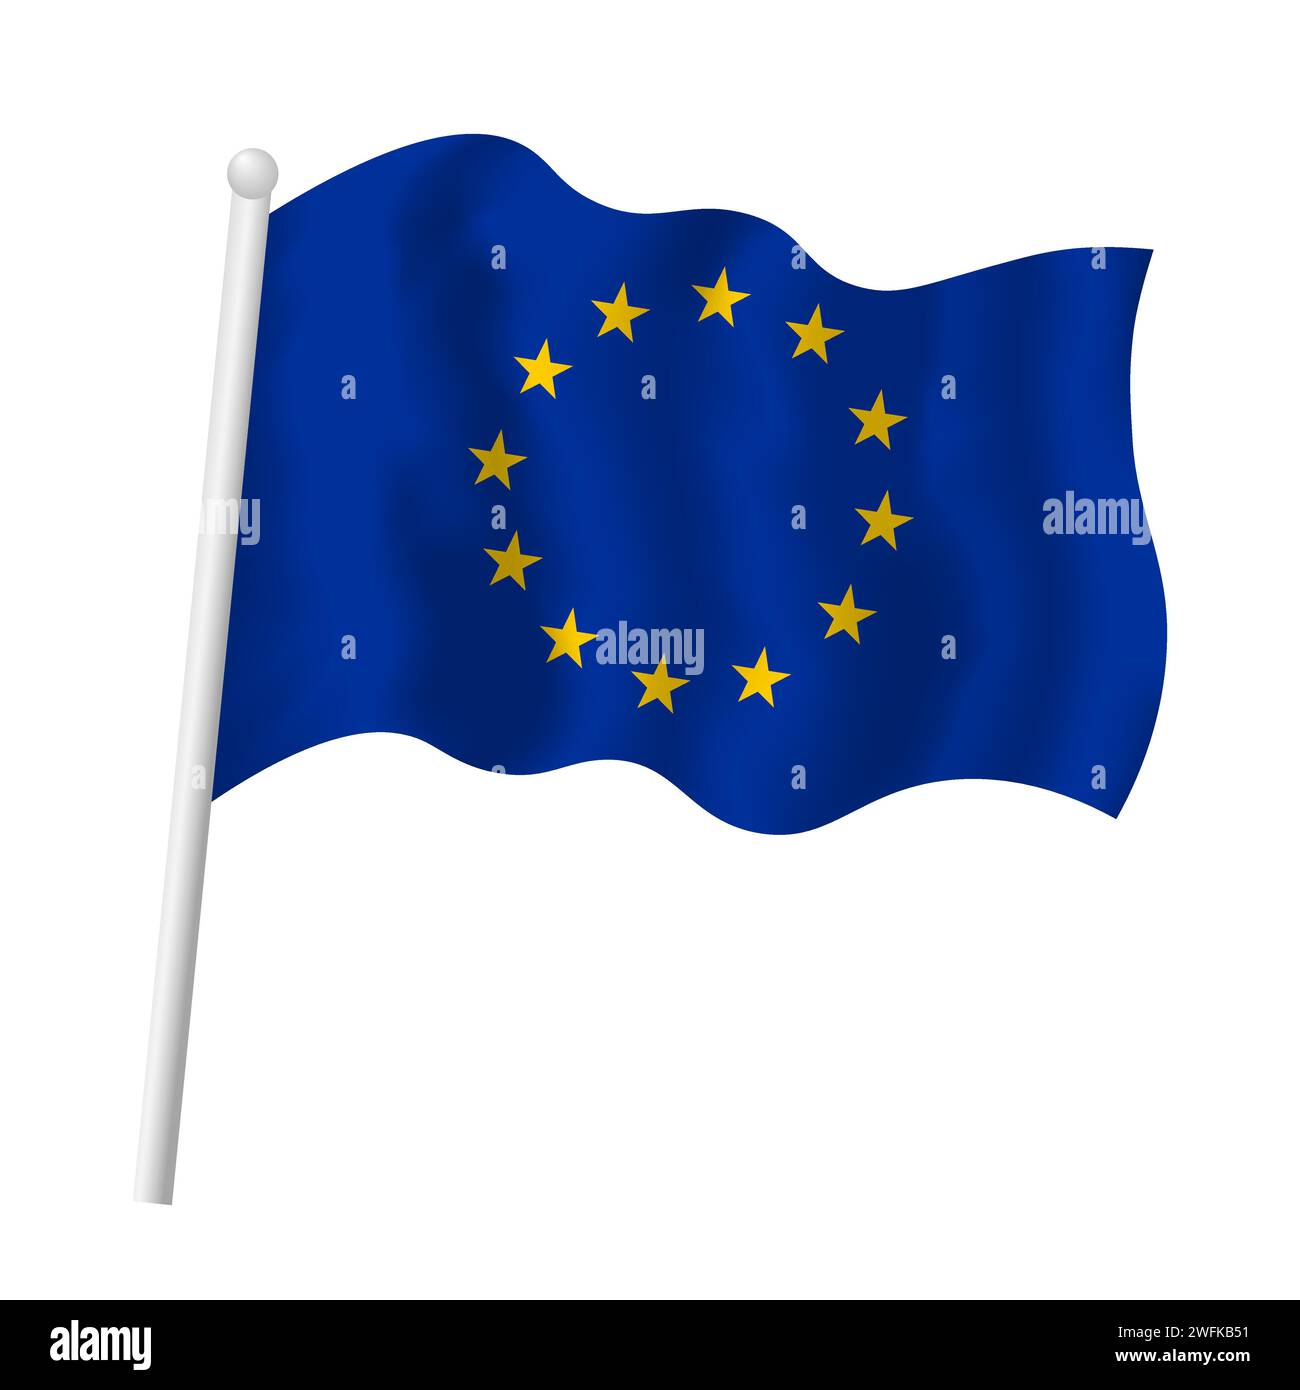 Die EU-Flagge schwenkt. Vektor-isolierte Illustration der Flagge der Europäischen Union am Fahnenmast im Wind. Gelber Sternenkreis auf blauem Hintergrund Stock Vektor